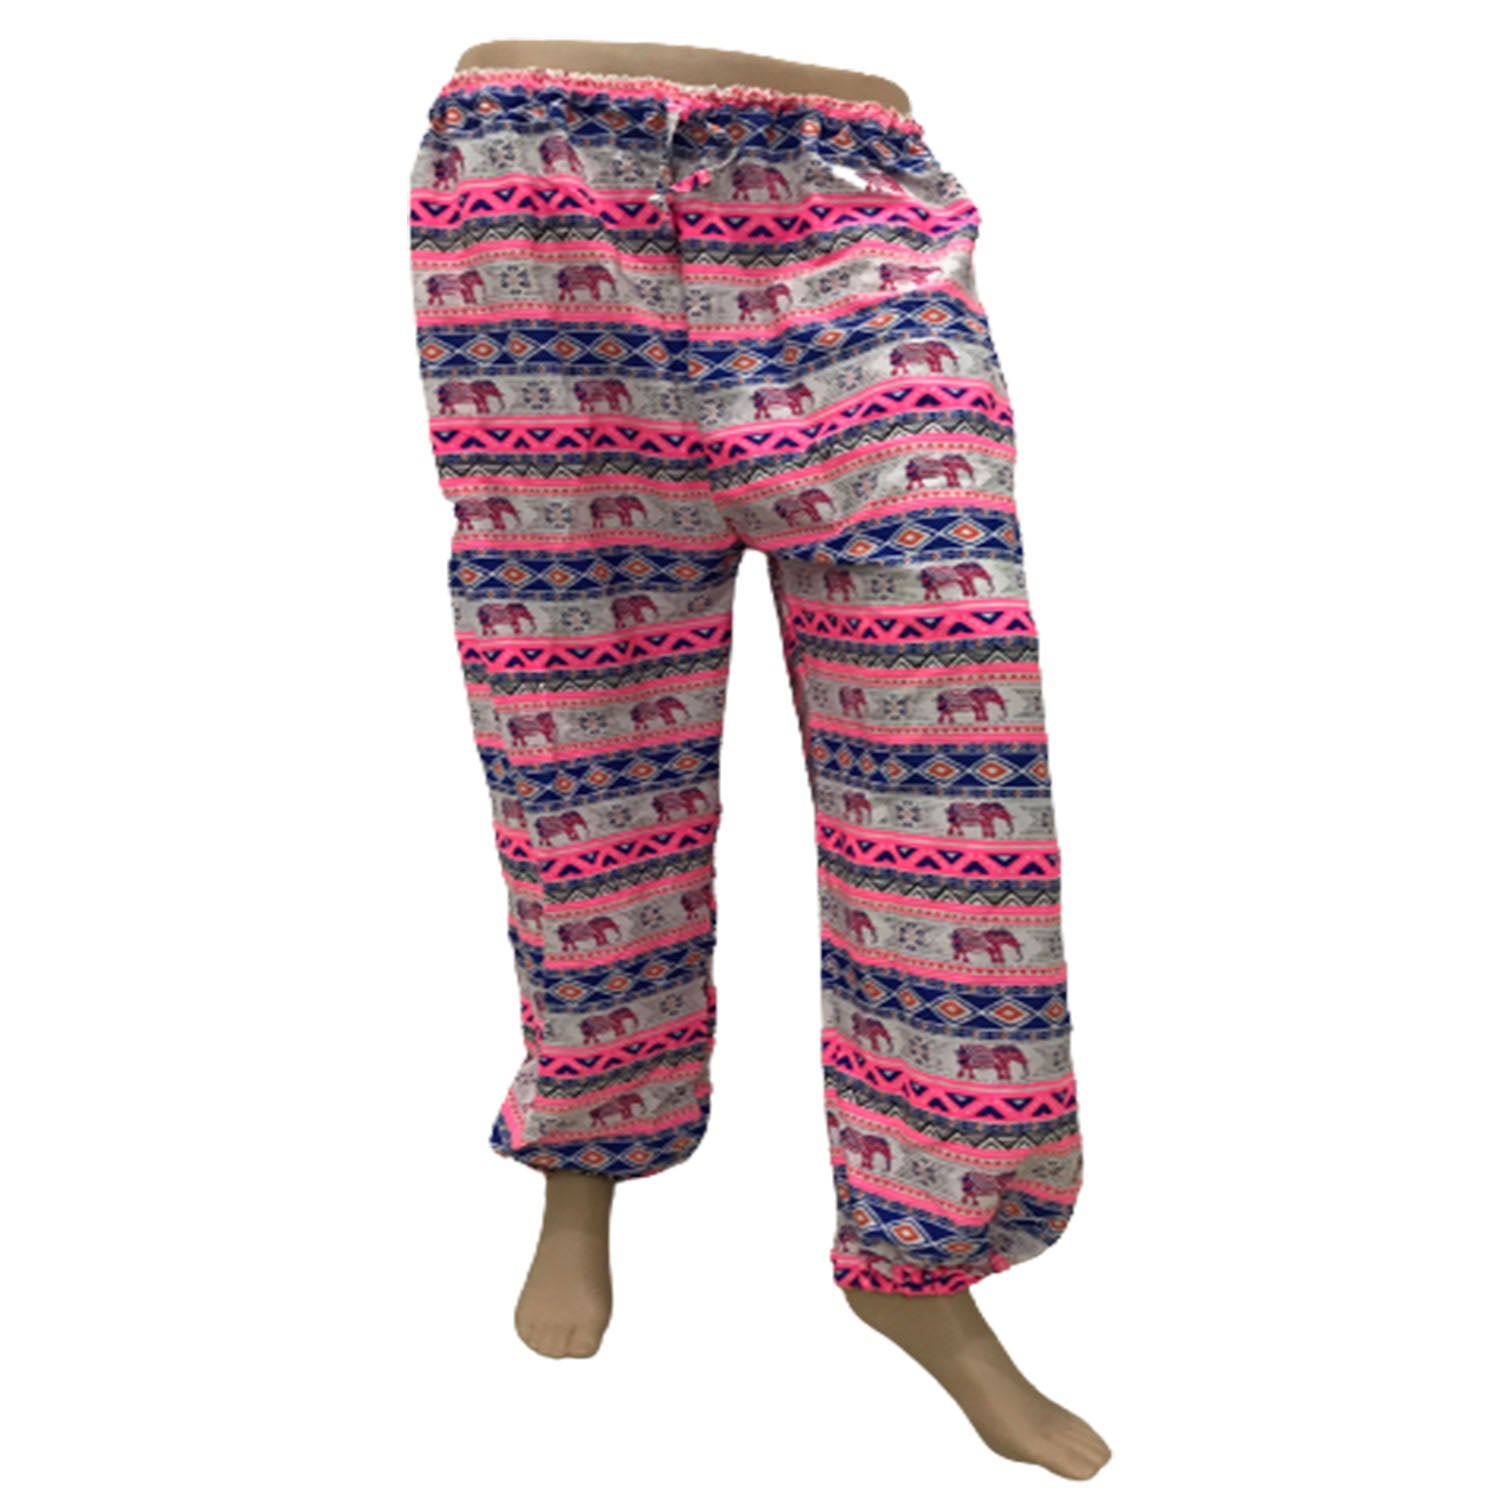 Ganesha Handicrafts, Comfy Cuffed Elephant Print Trousers, Elephant Print Trousers, Comfy Cuffed Trousers, Trending Trousers, Pink Colour Trousers.